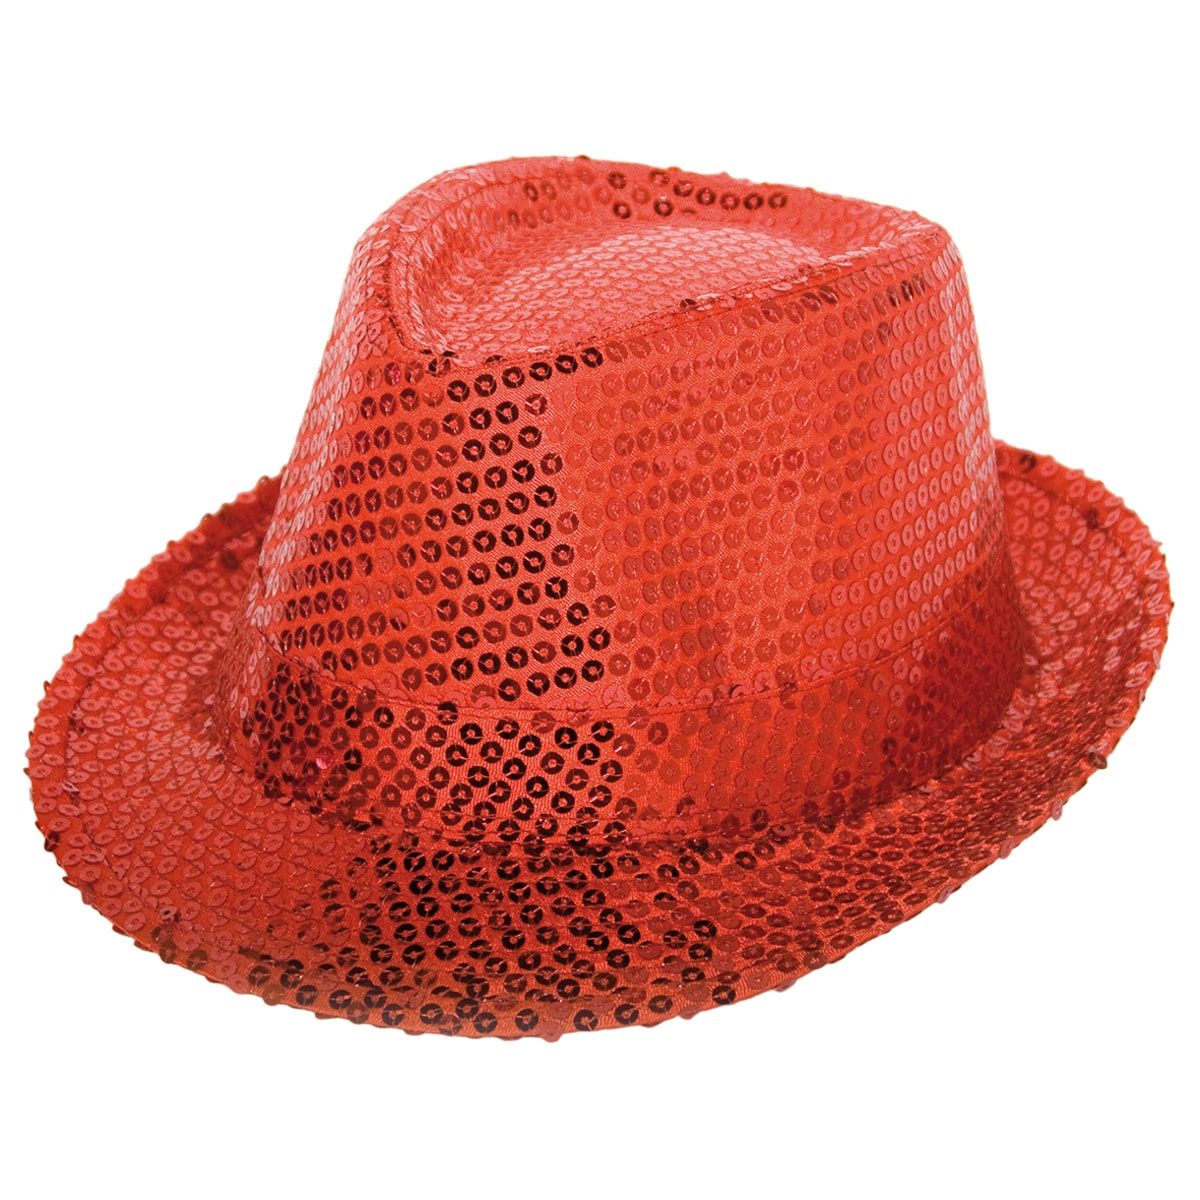 Trilby pailletten hoed rode